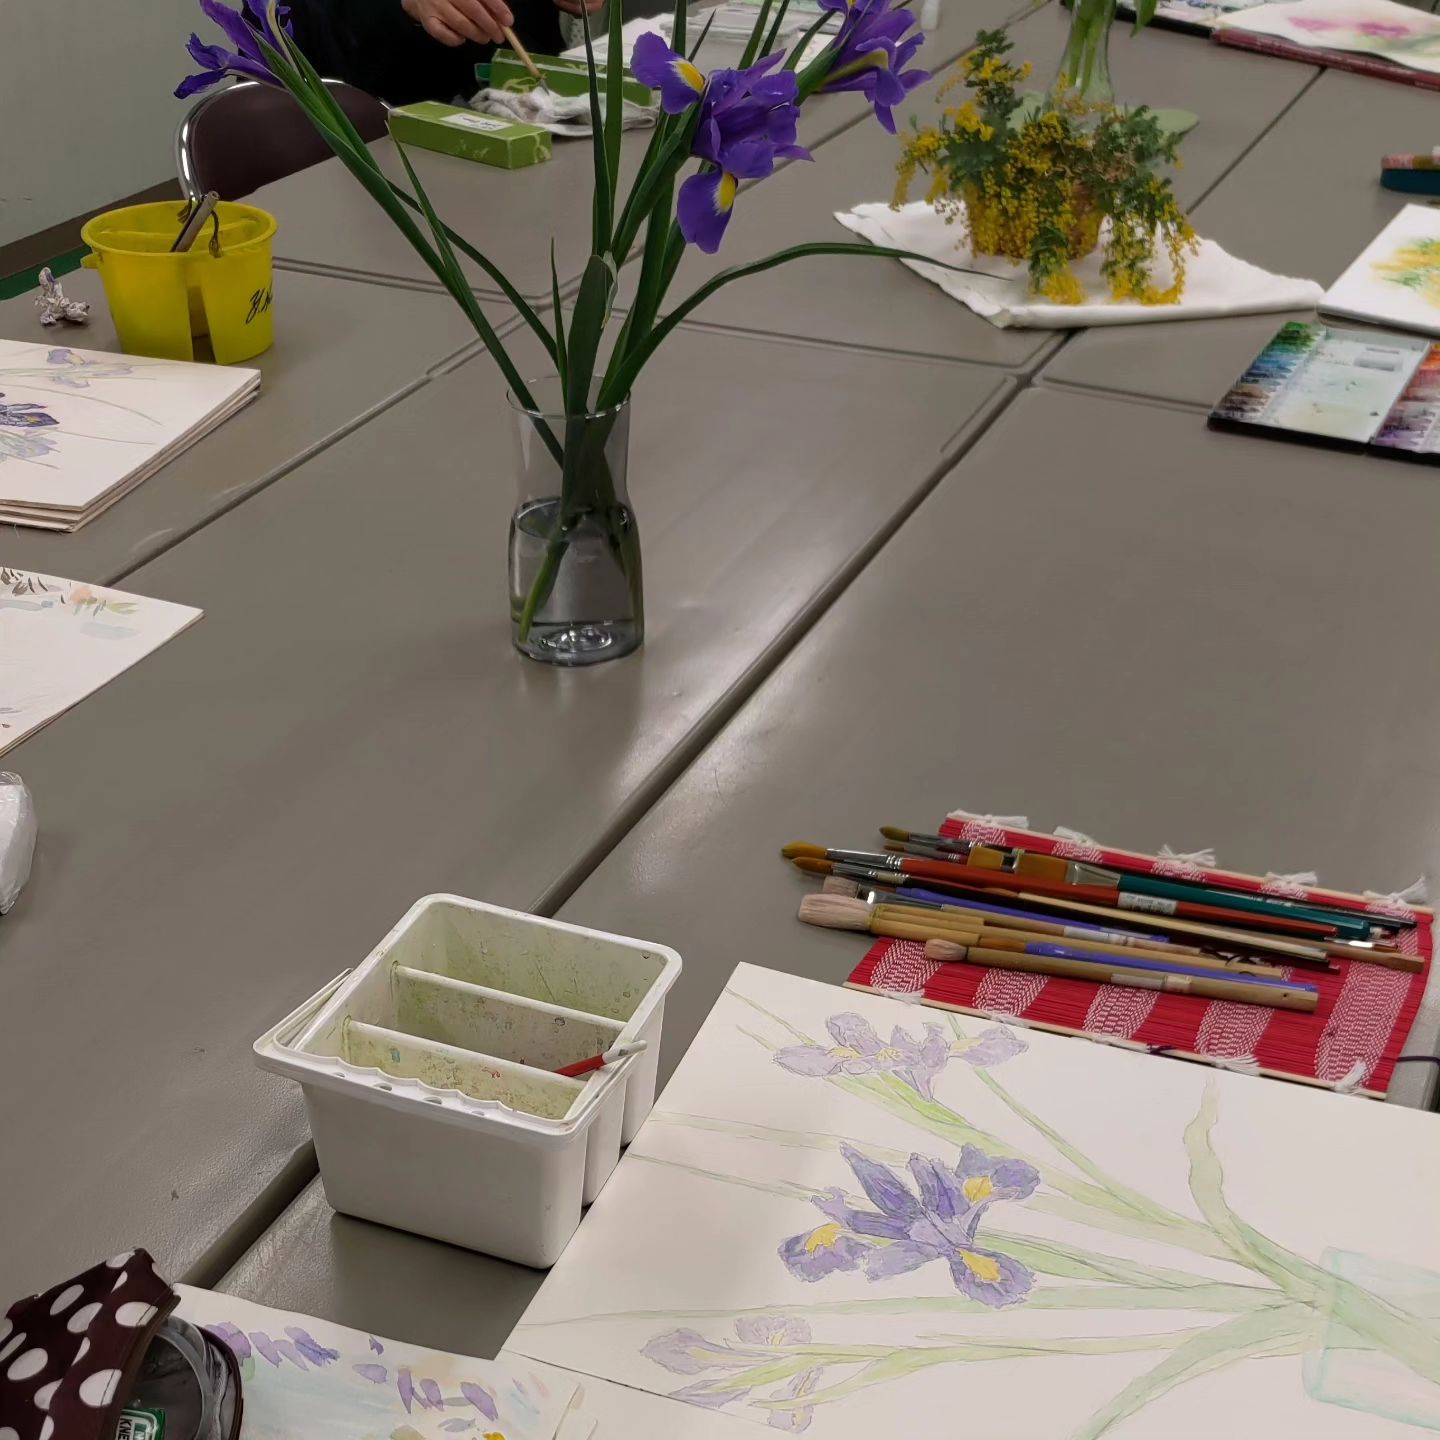 遊心水彩画教室

2月後半のモチーフは、アイリスとチューリップとミモザでした。花屋さんに売っている花は季節を先取りしていますが、年々早くなっている気がします。

3月は自由モチーフです。生徒の皆さんには、写真かモチーフを持ってきて描いていただきます。どんな写真が来るのか楽しみです。